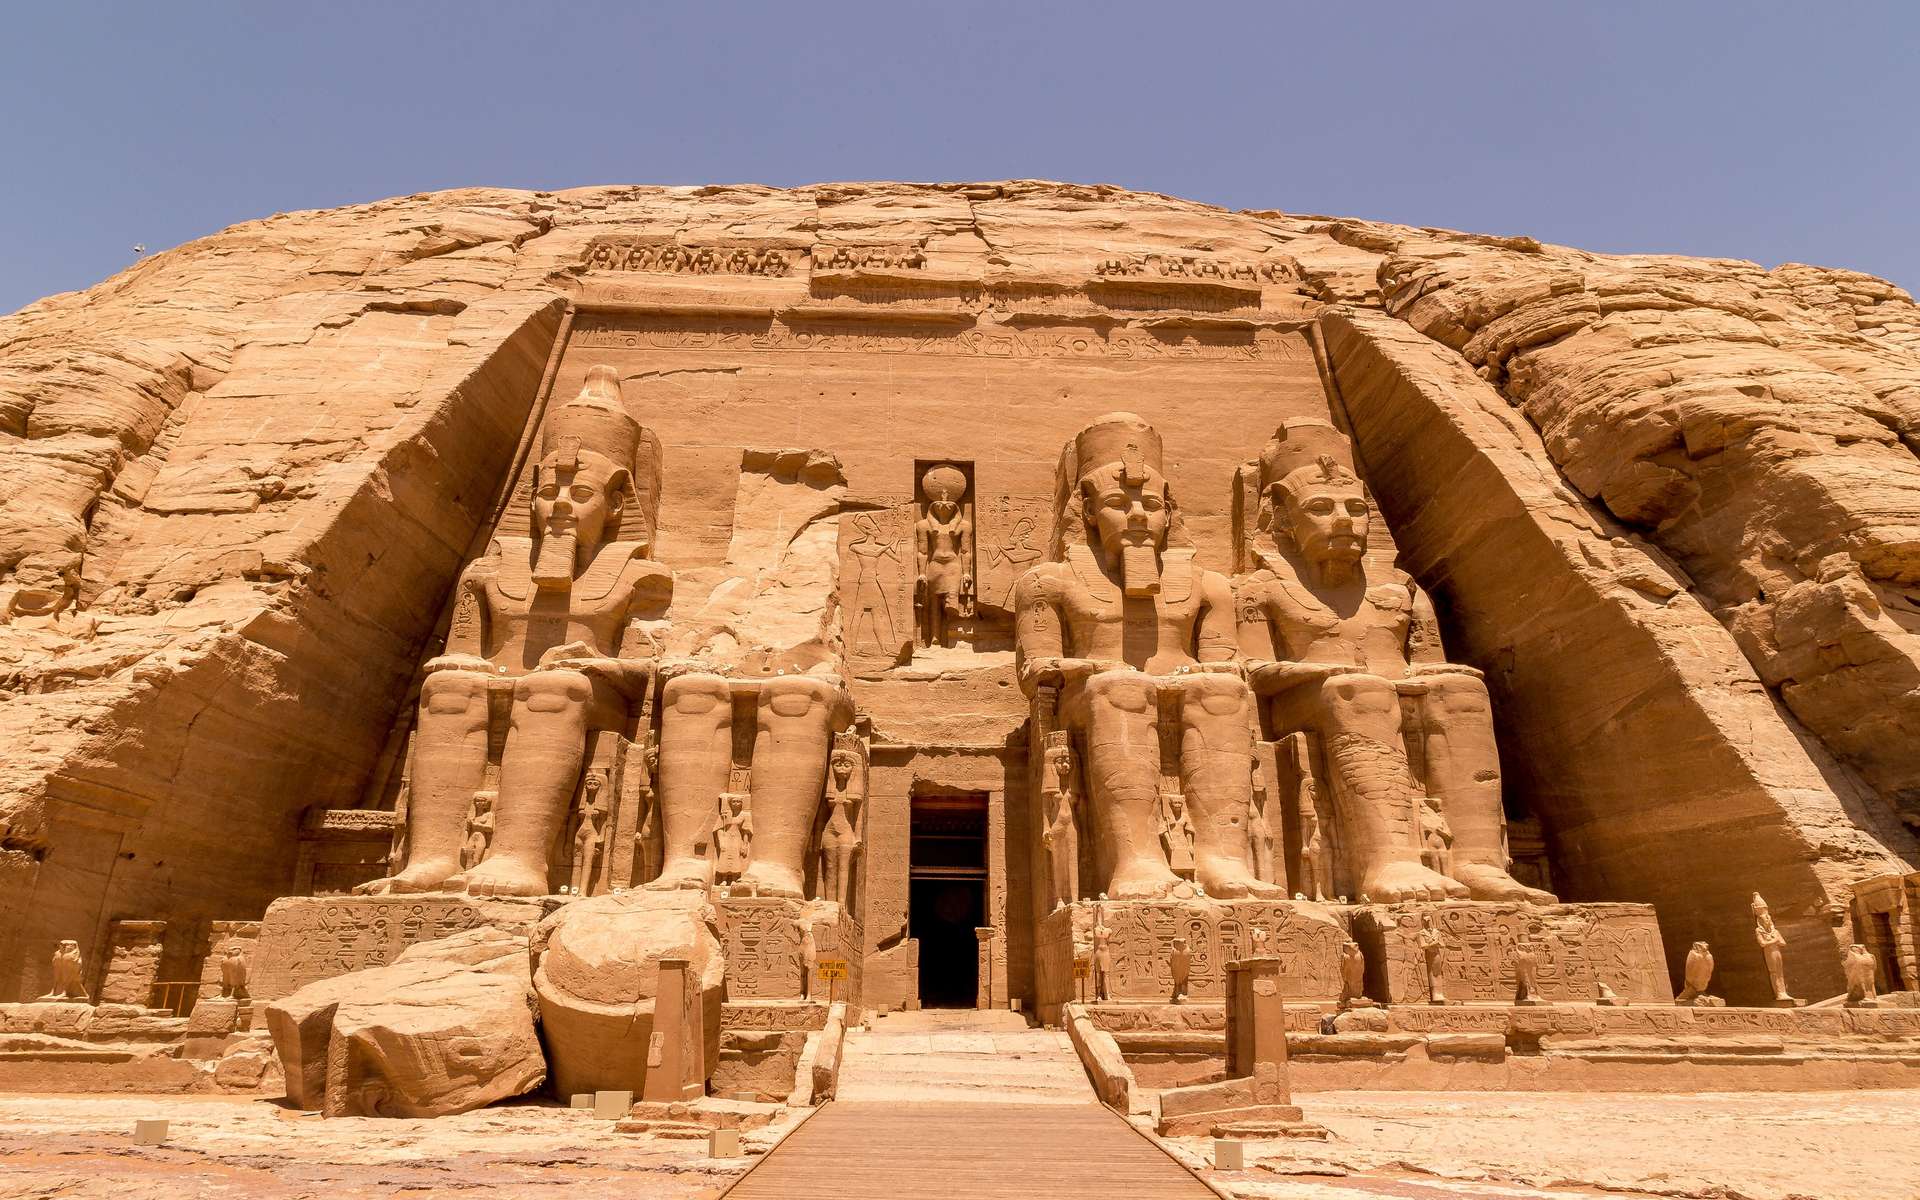 Découverte exceptionnelle d'une grotte funéraire datant du règne de Ramsès II